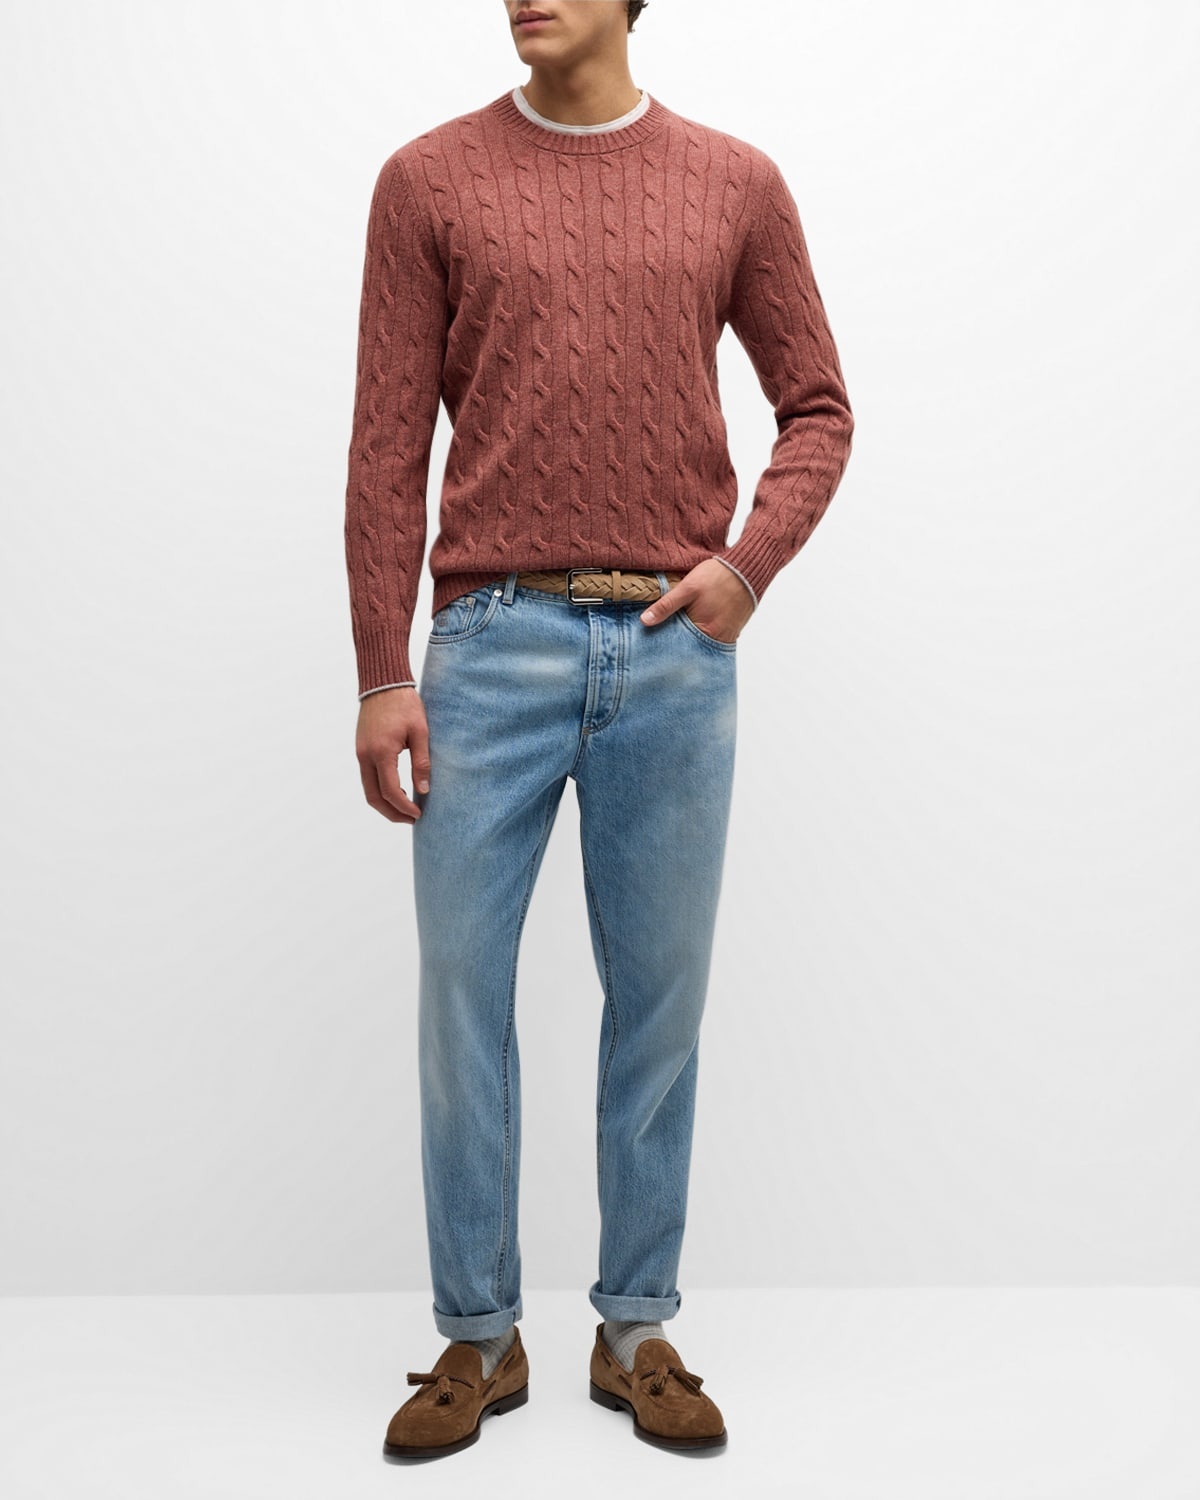 Men's Cashmere Cable Knit Crewneck Sweater - 3